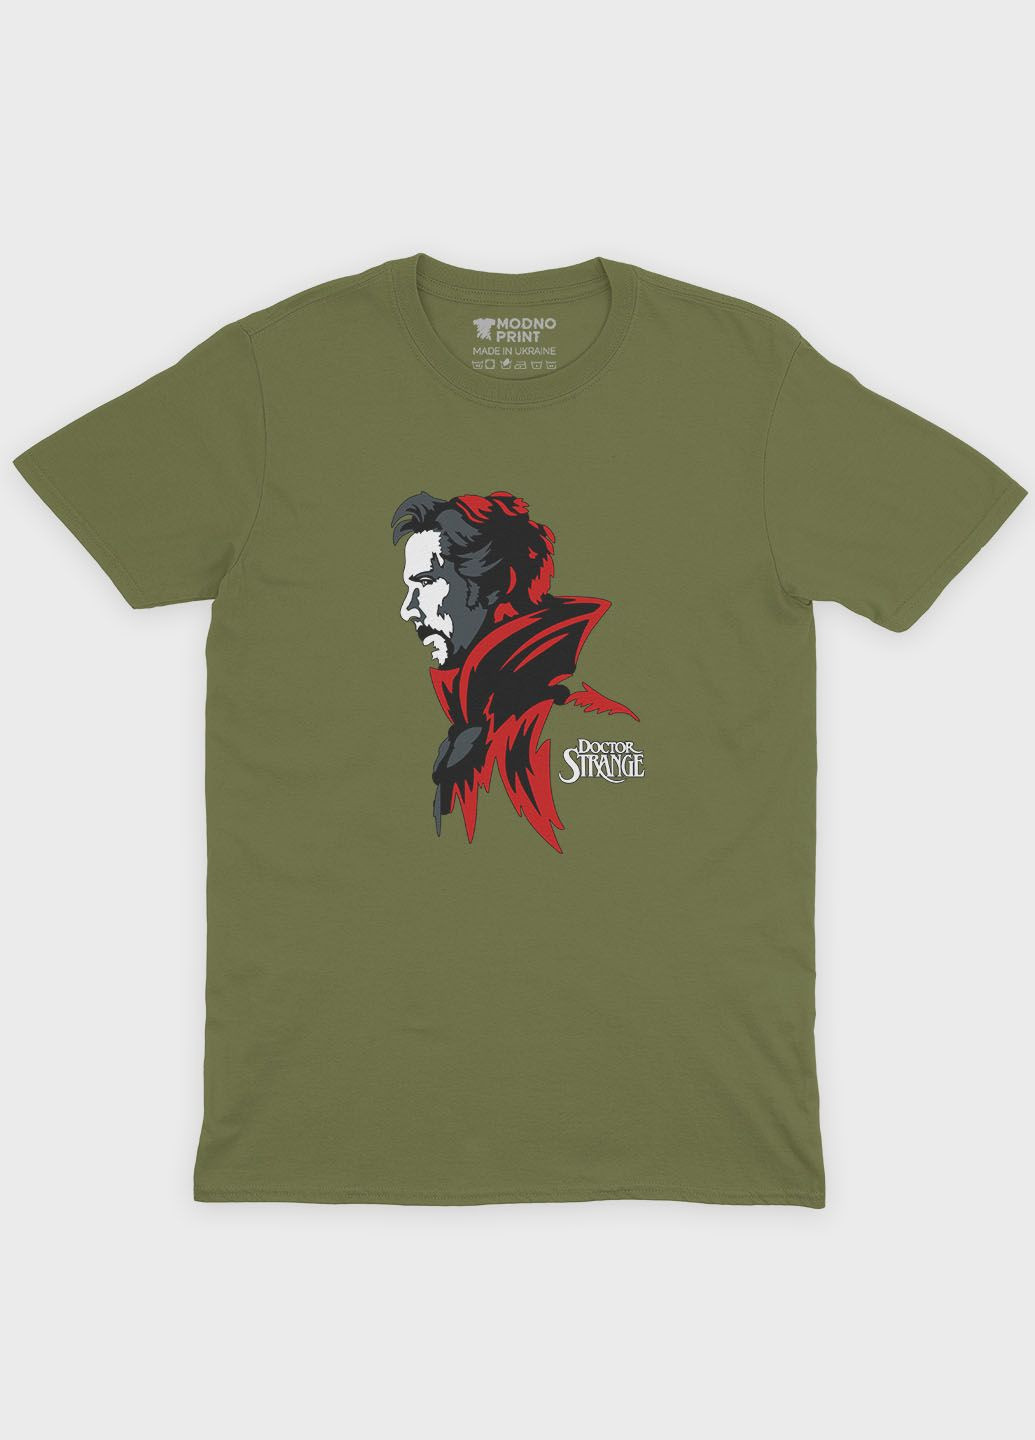 Хаки (оливковая) мужская футболка с принтом супергероя - доктор стрэндж (ts001-1-hgr-006-020-001) Modno